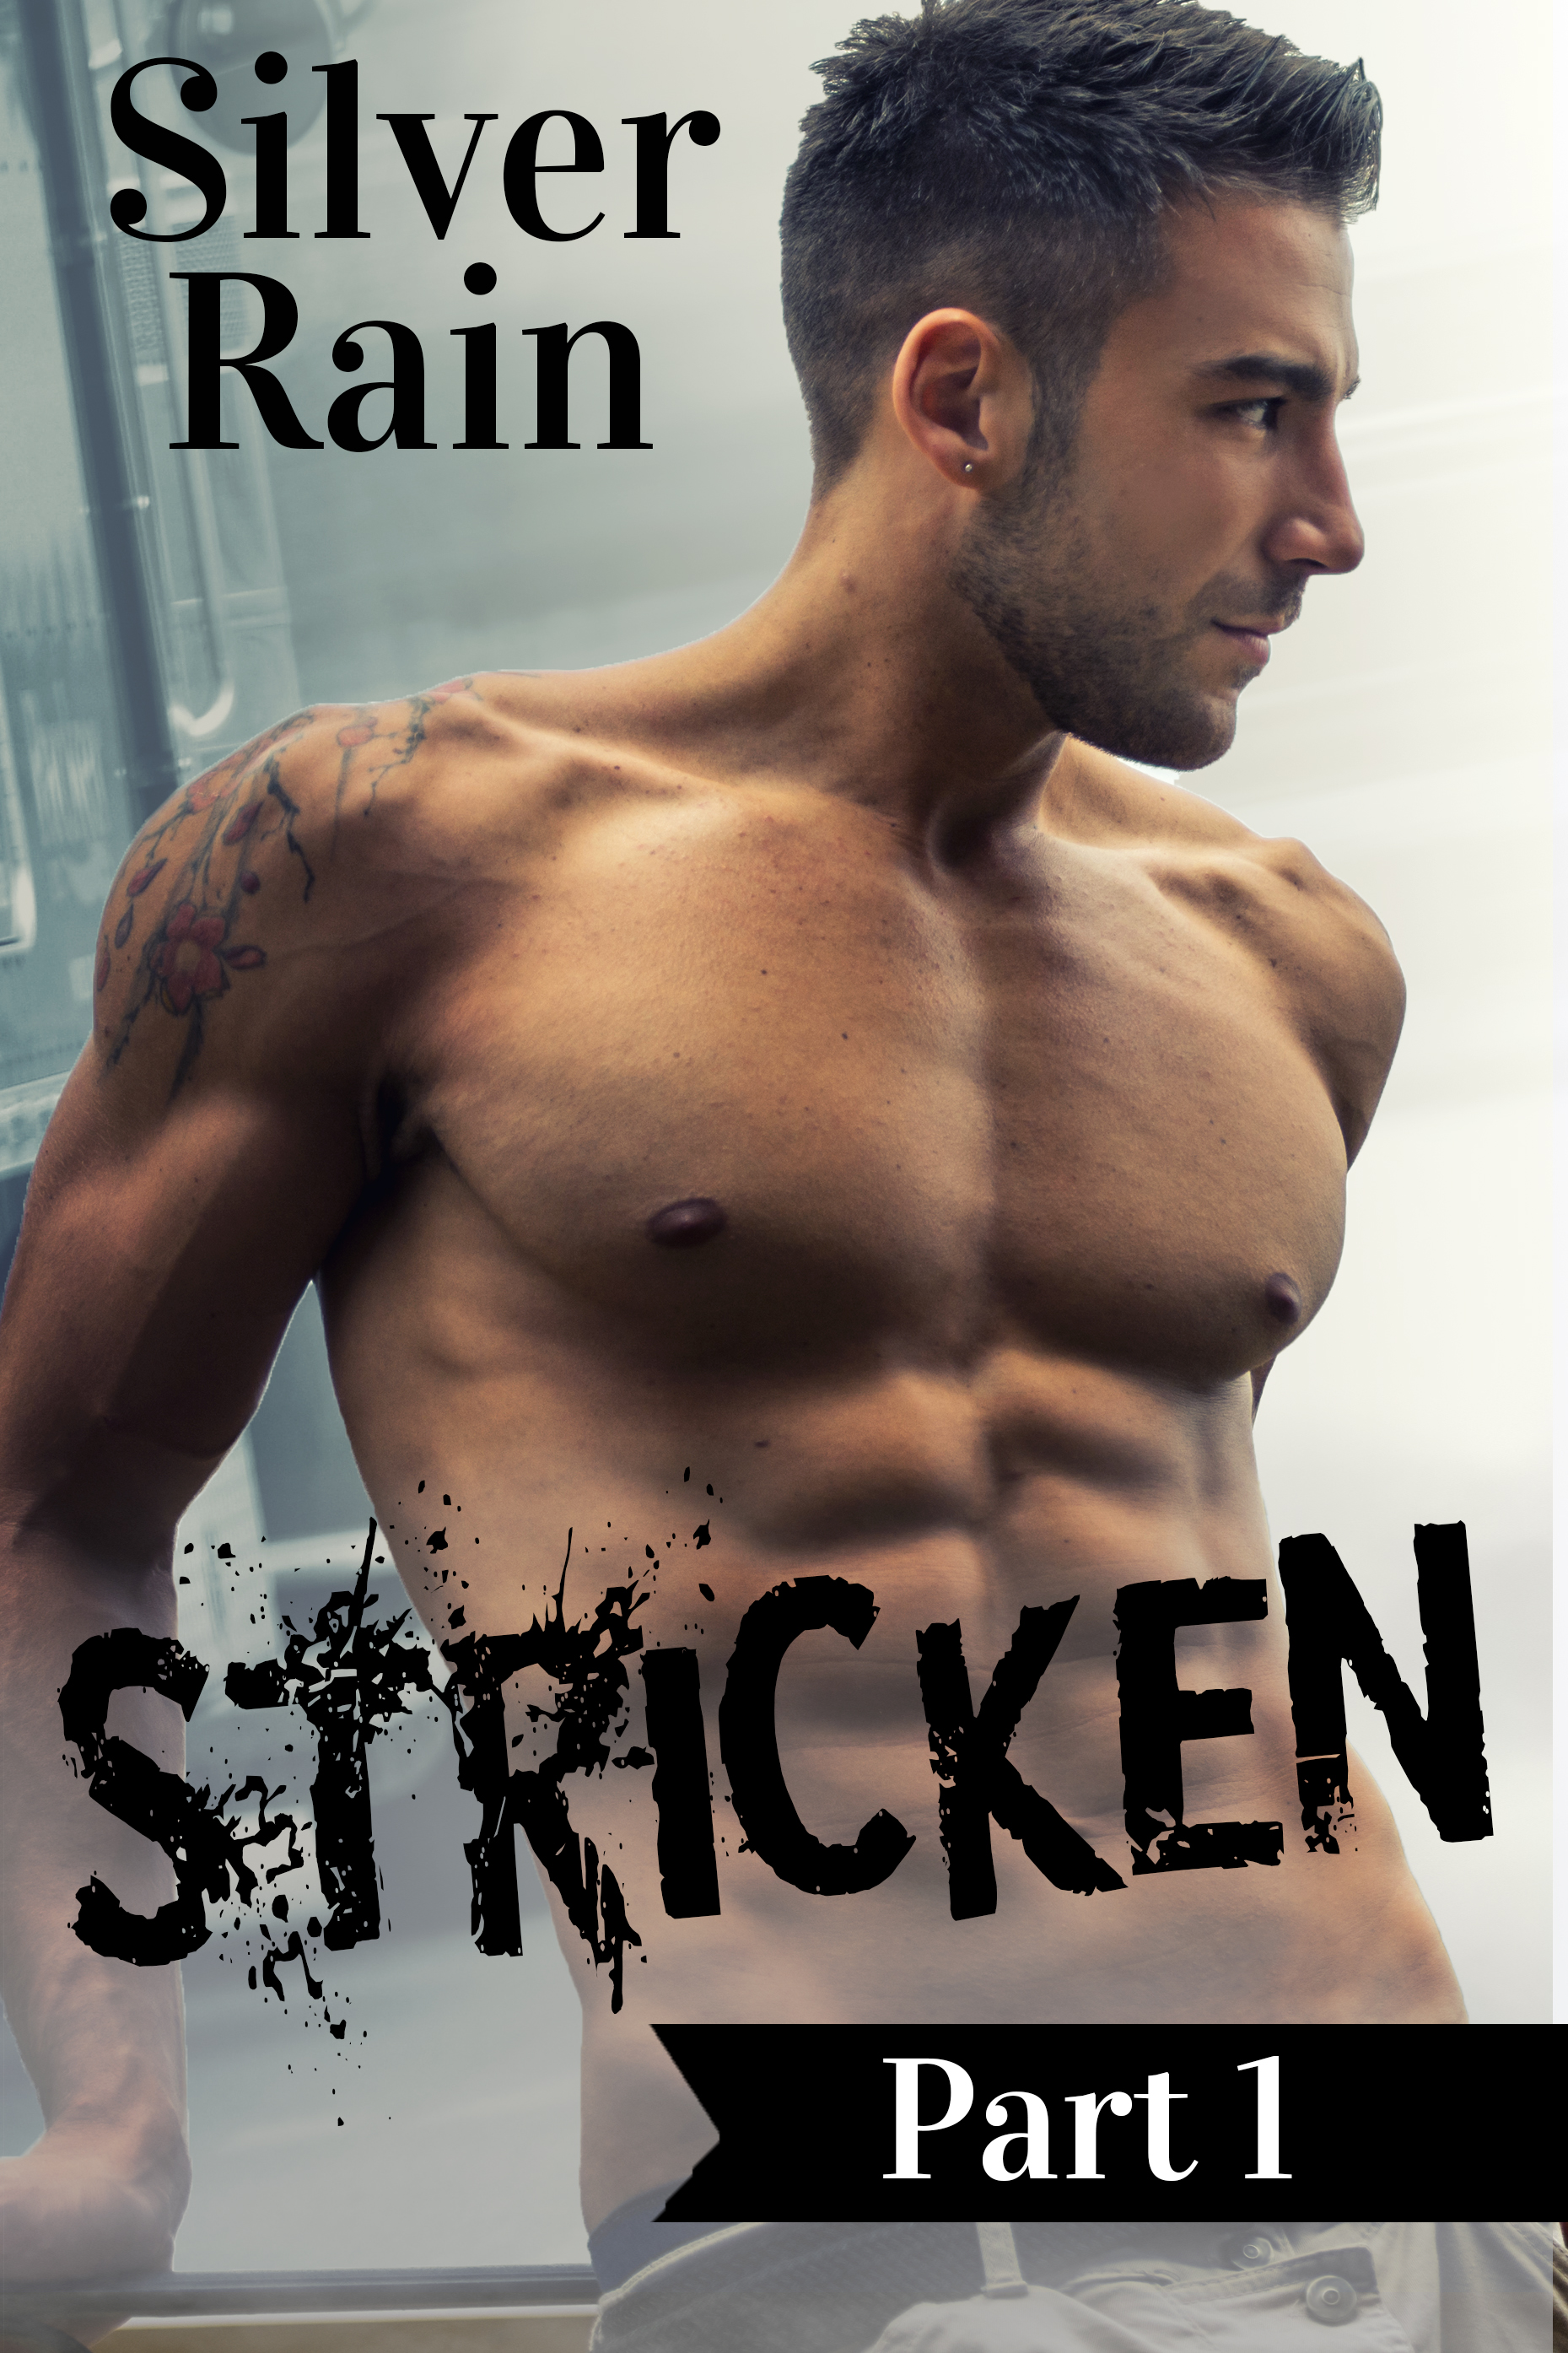 FREE: Stricken, Part 1 by Silver Rain